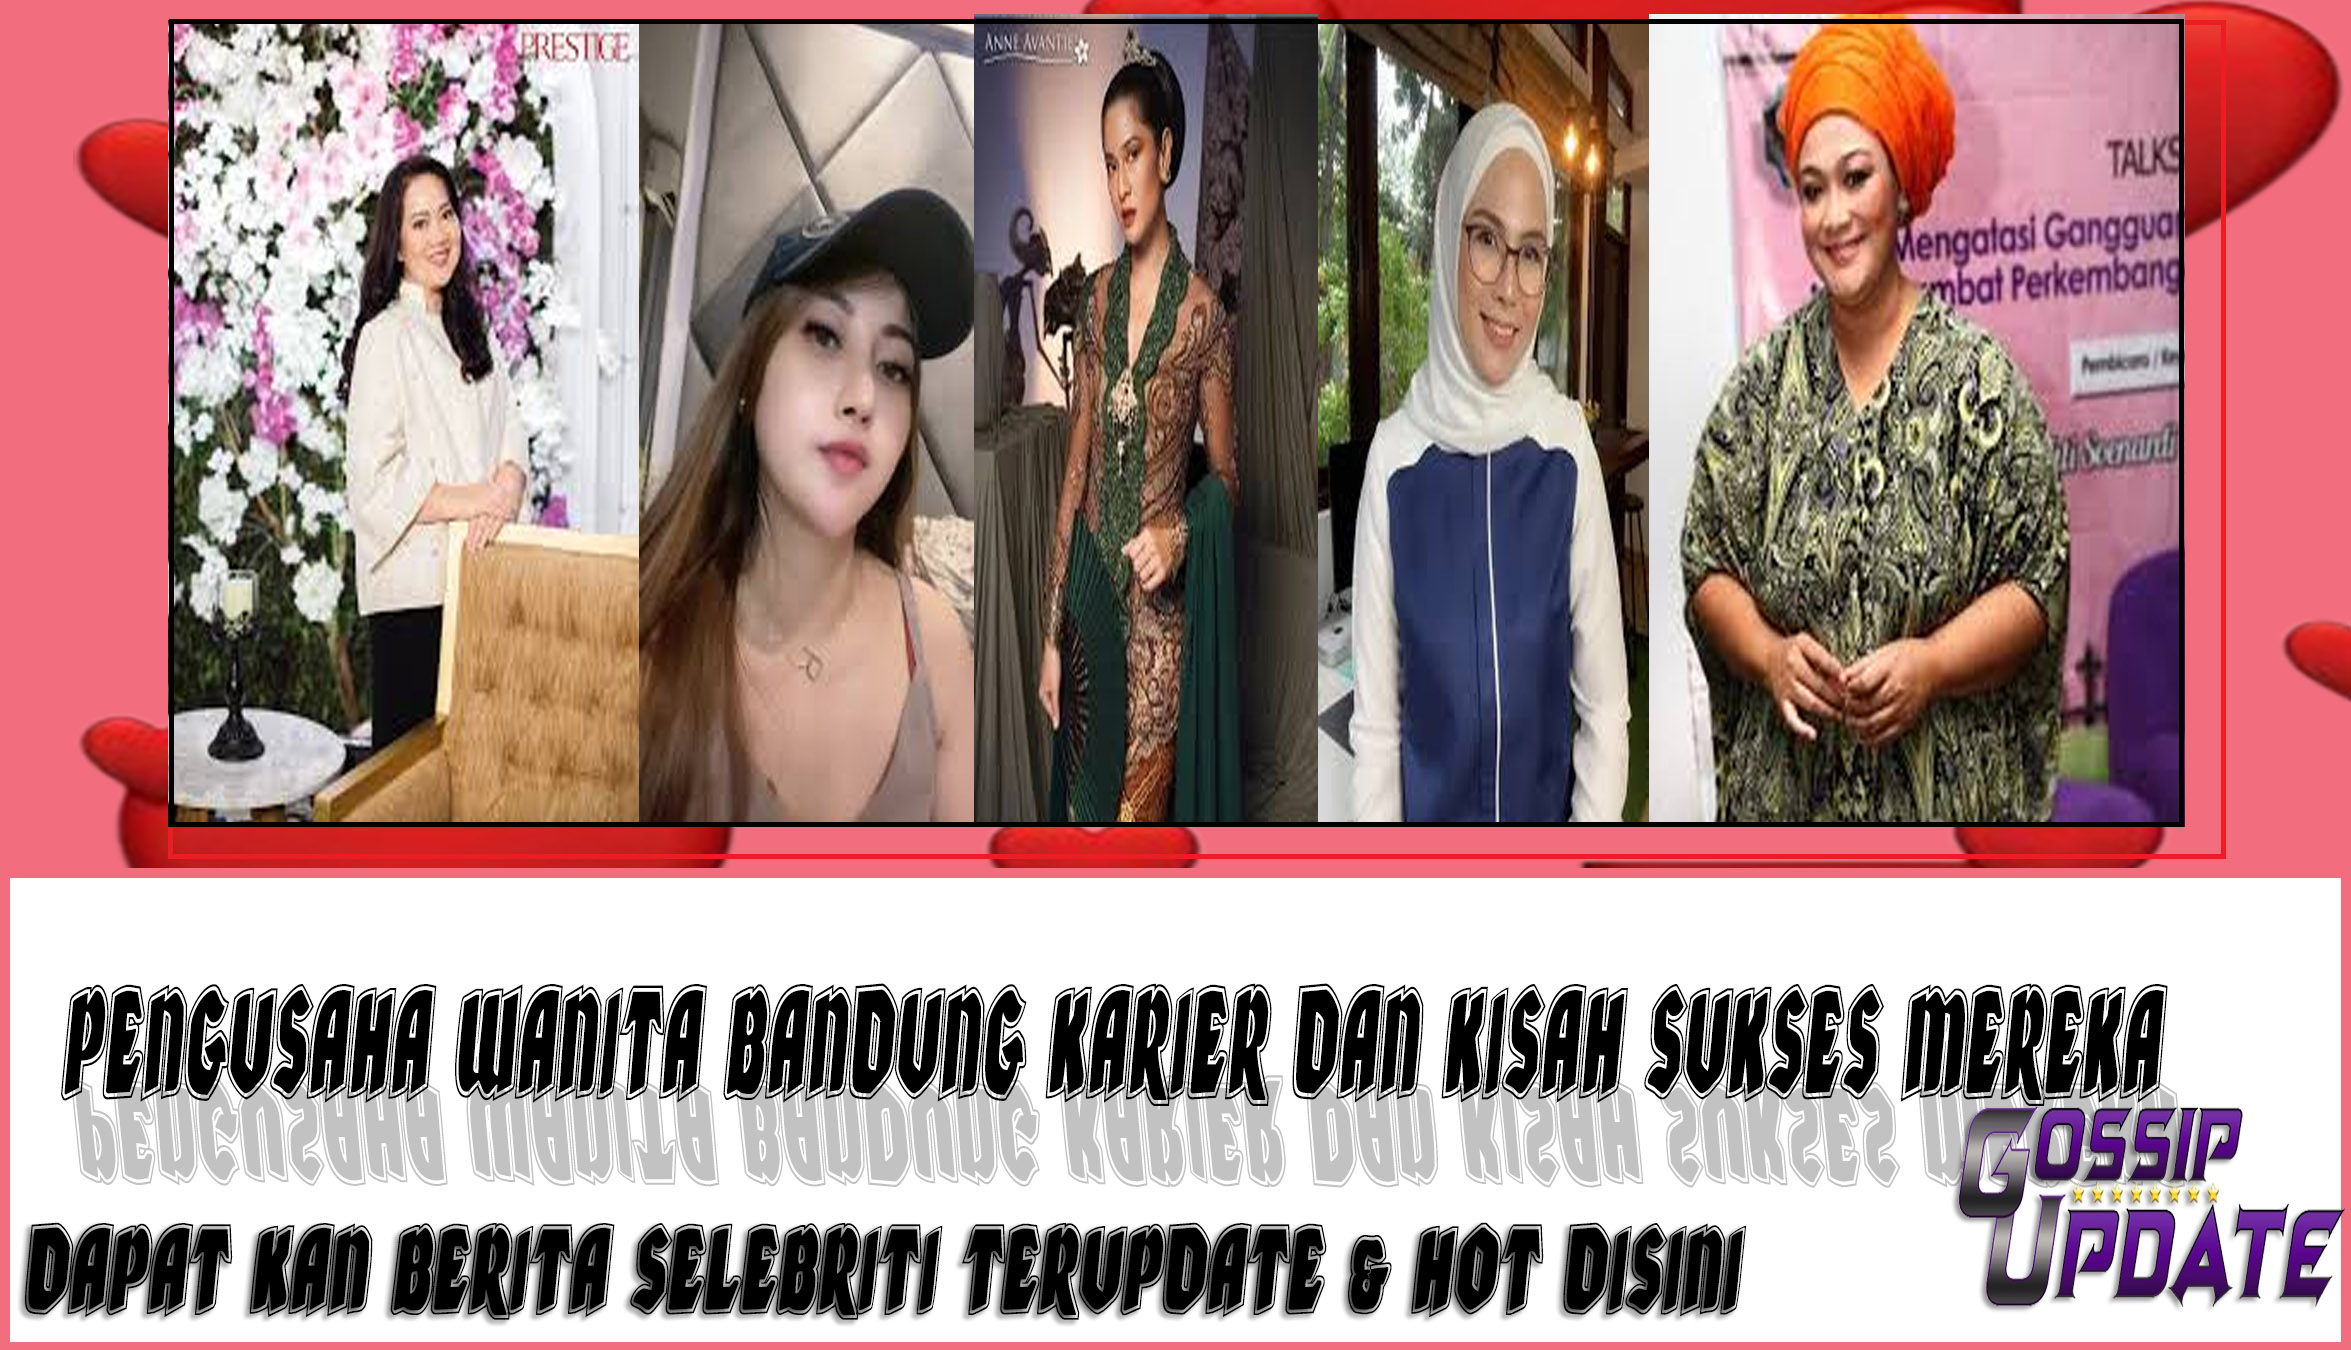 5 Pengusaha Wanita Bandung